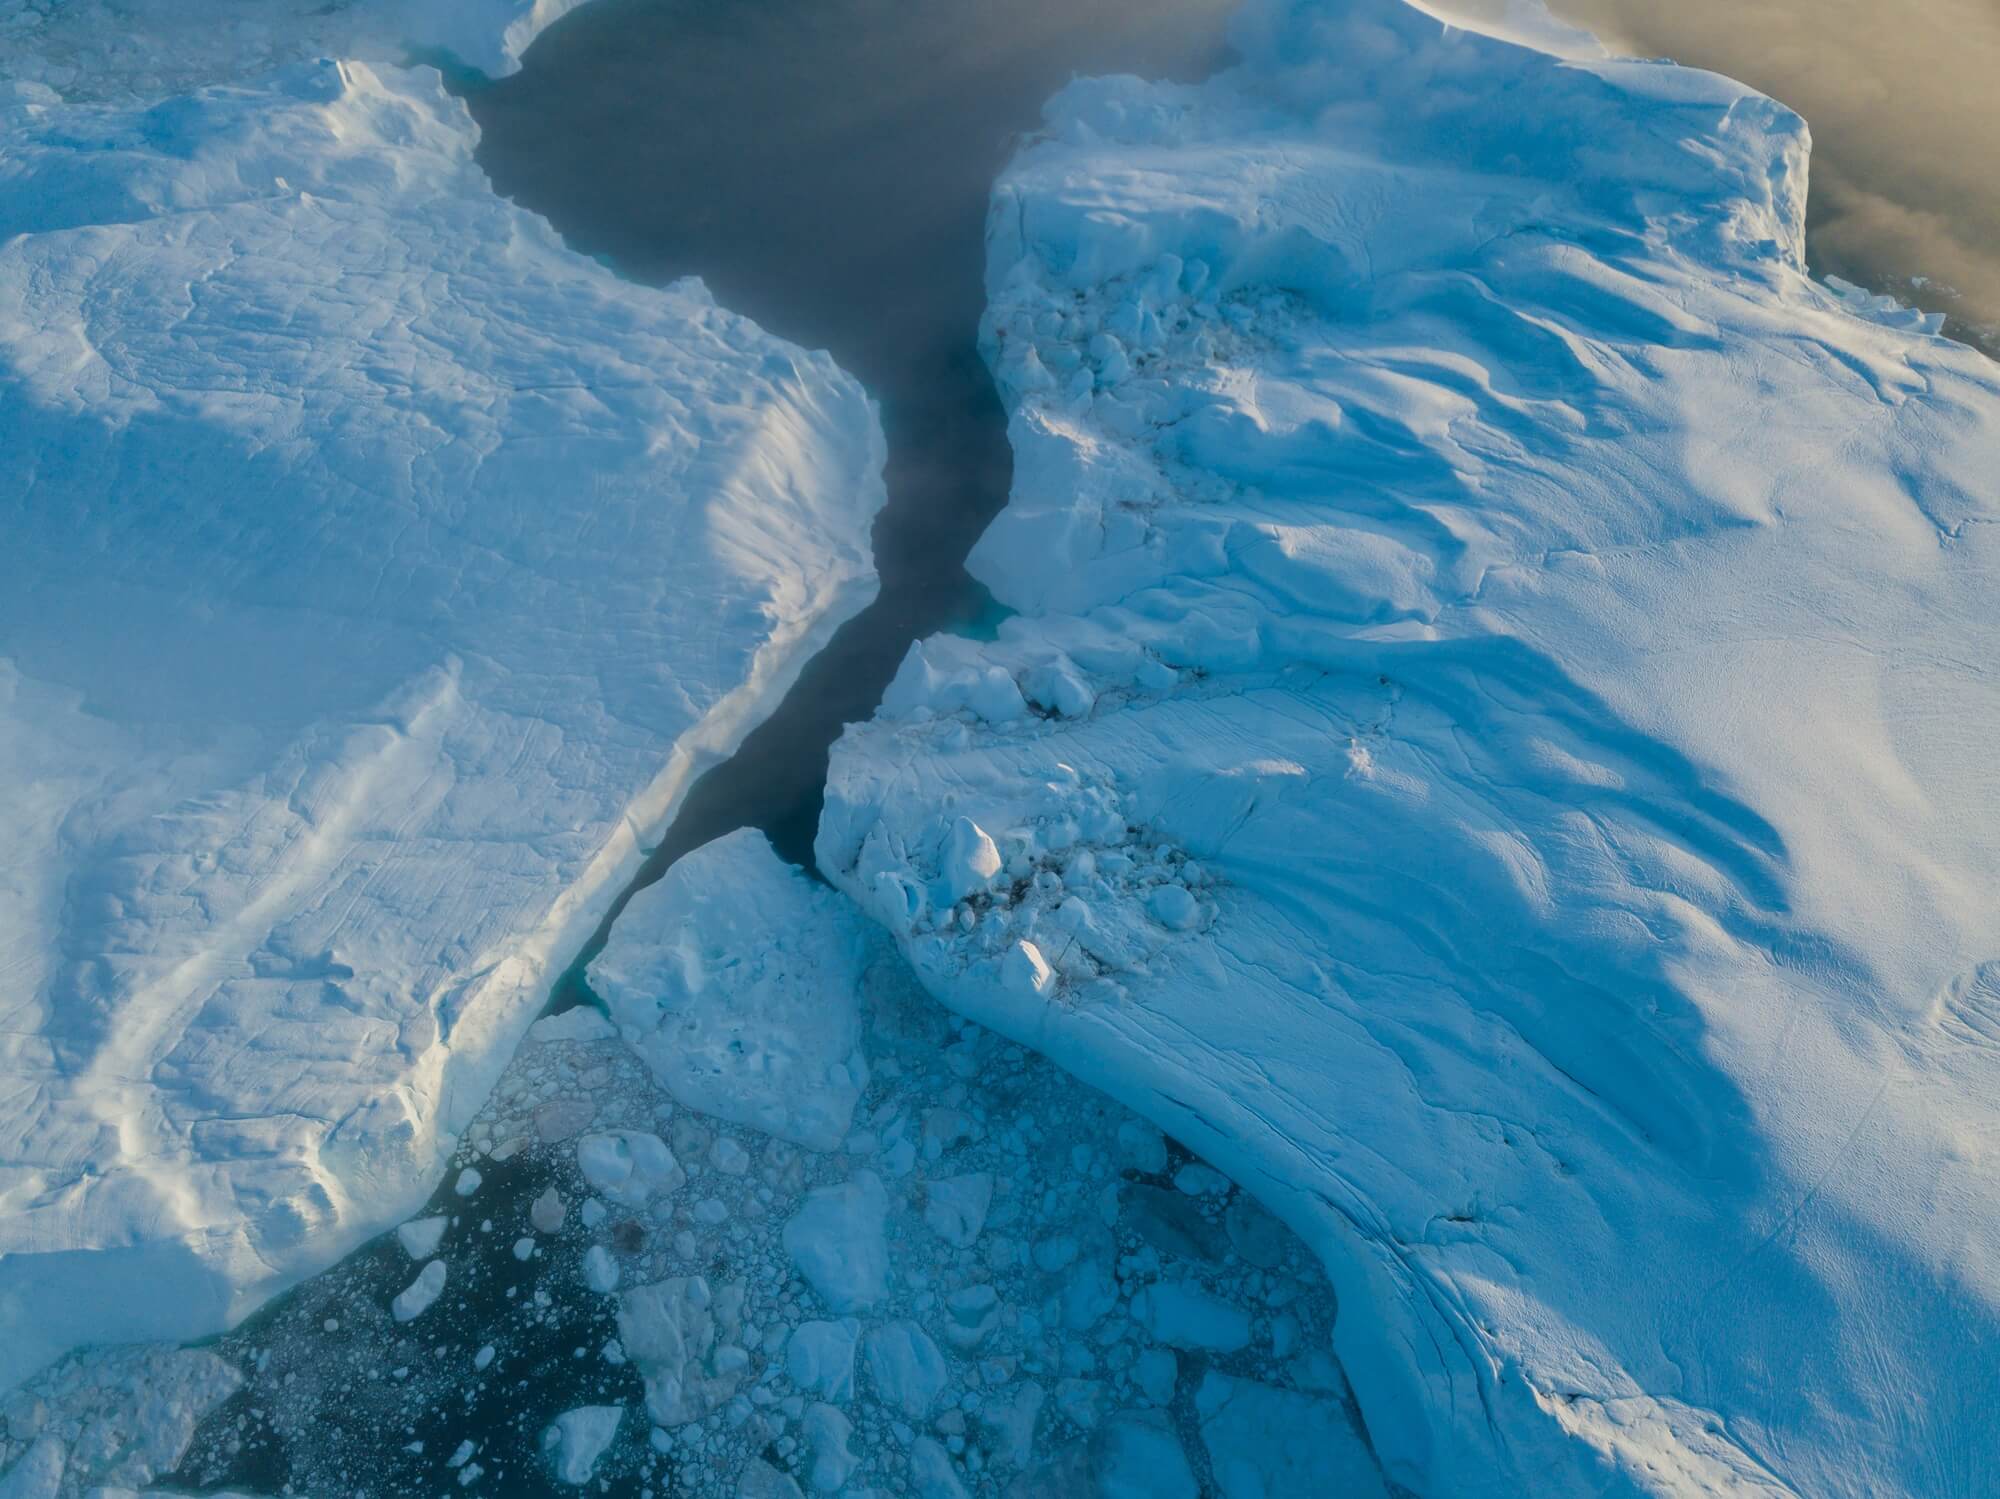 צילום מרחפן של קרחון מתפרק. <a href="https://depositphotos.com. ">המחשה: depositphotos.com</a>